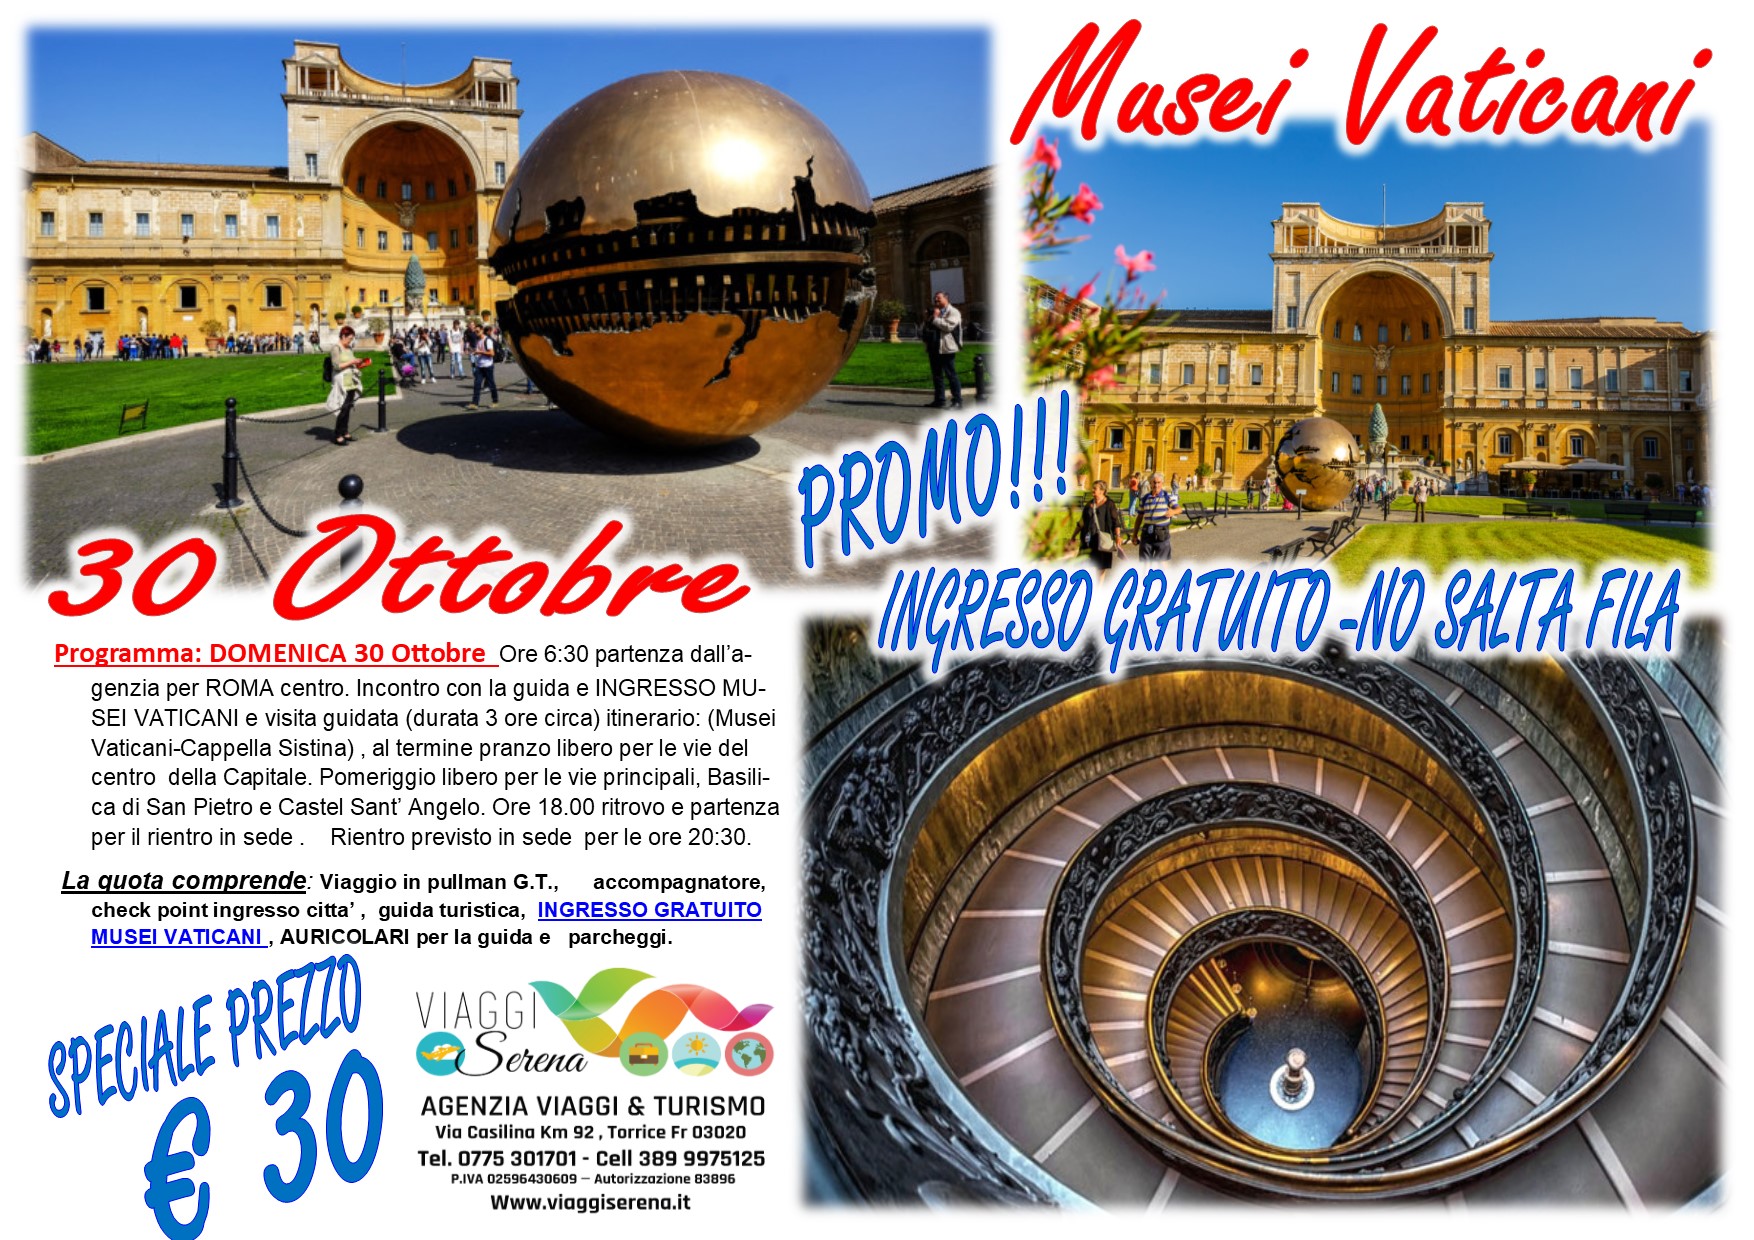 Viaggi di Gruppo: Musei Vaticani e Roma Capitale 30 Ottobre € 30,00